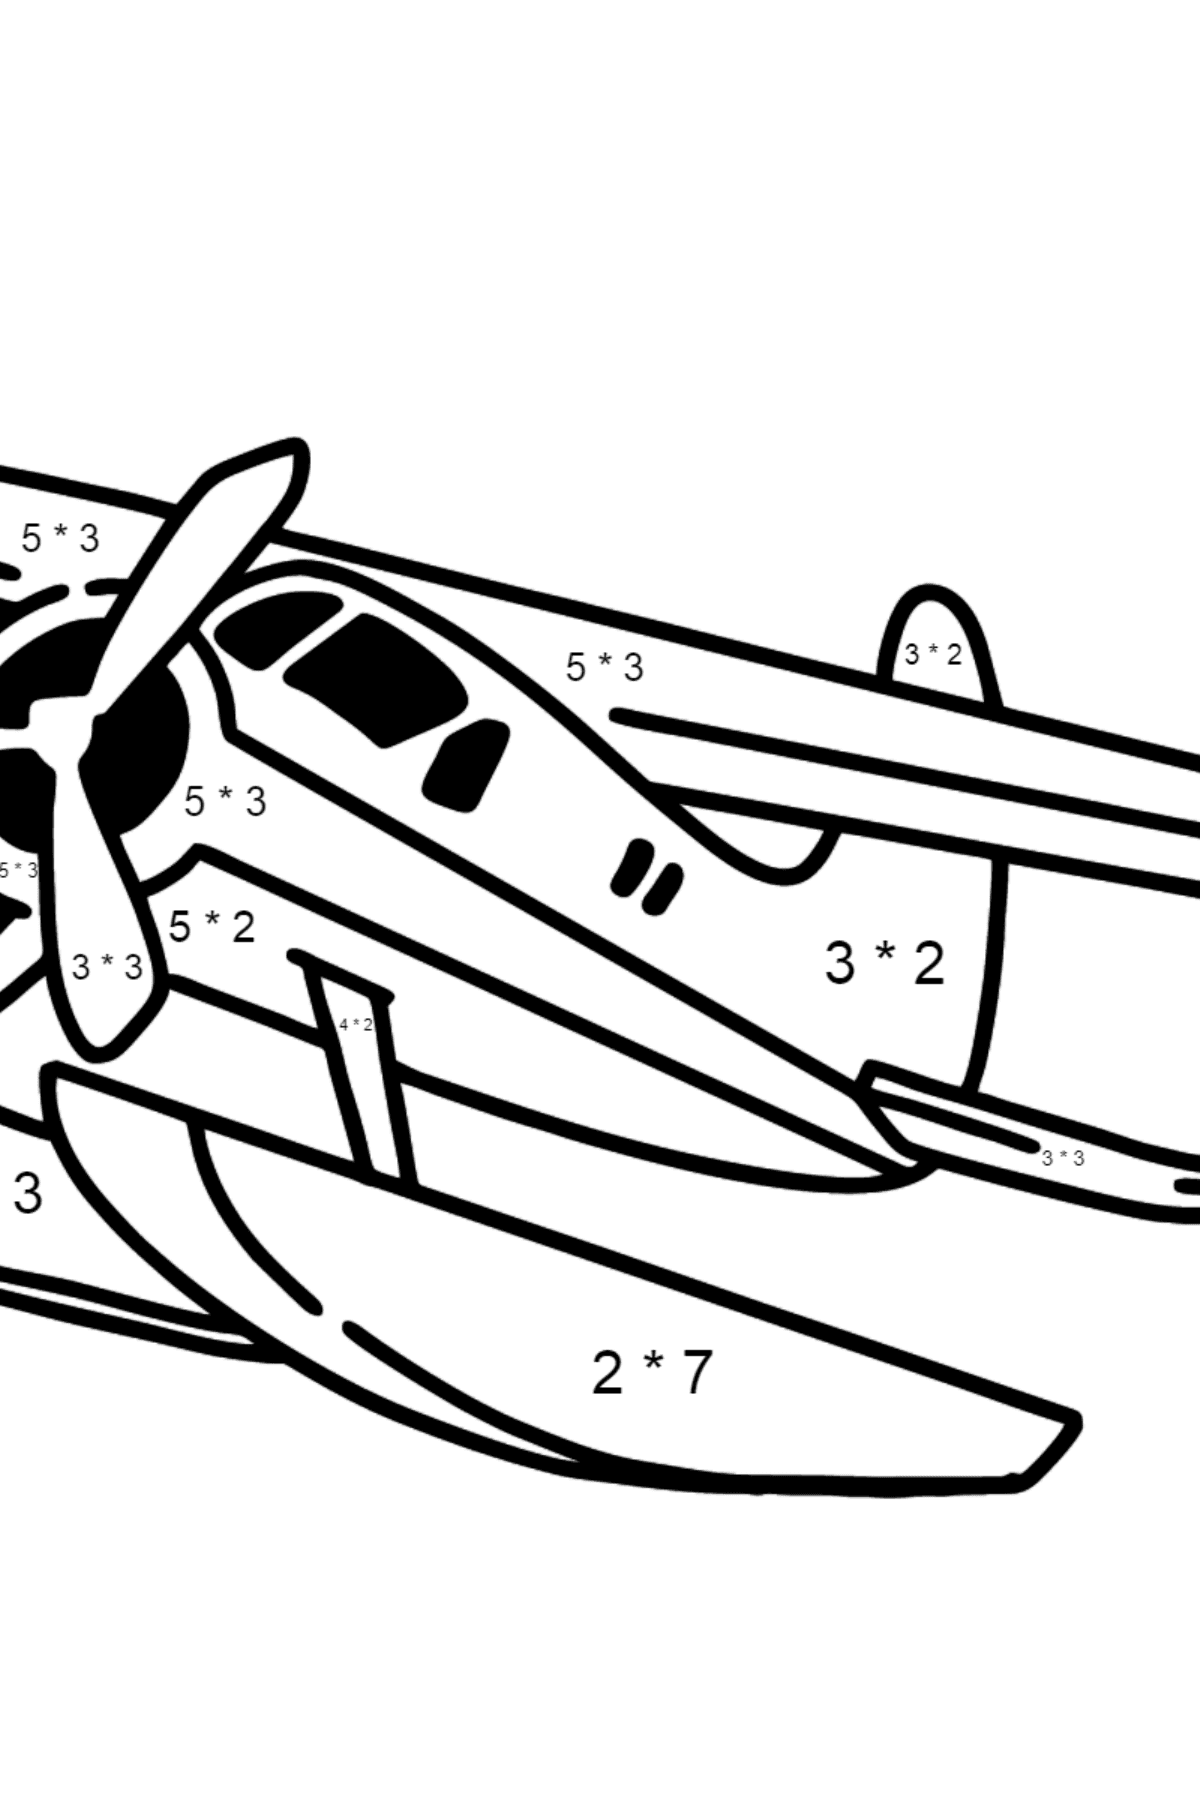 Desenho para colorir do Jet Airplane BE-200 - Colorindo com Matemática - Multiplicação para Crianças